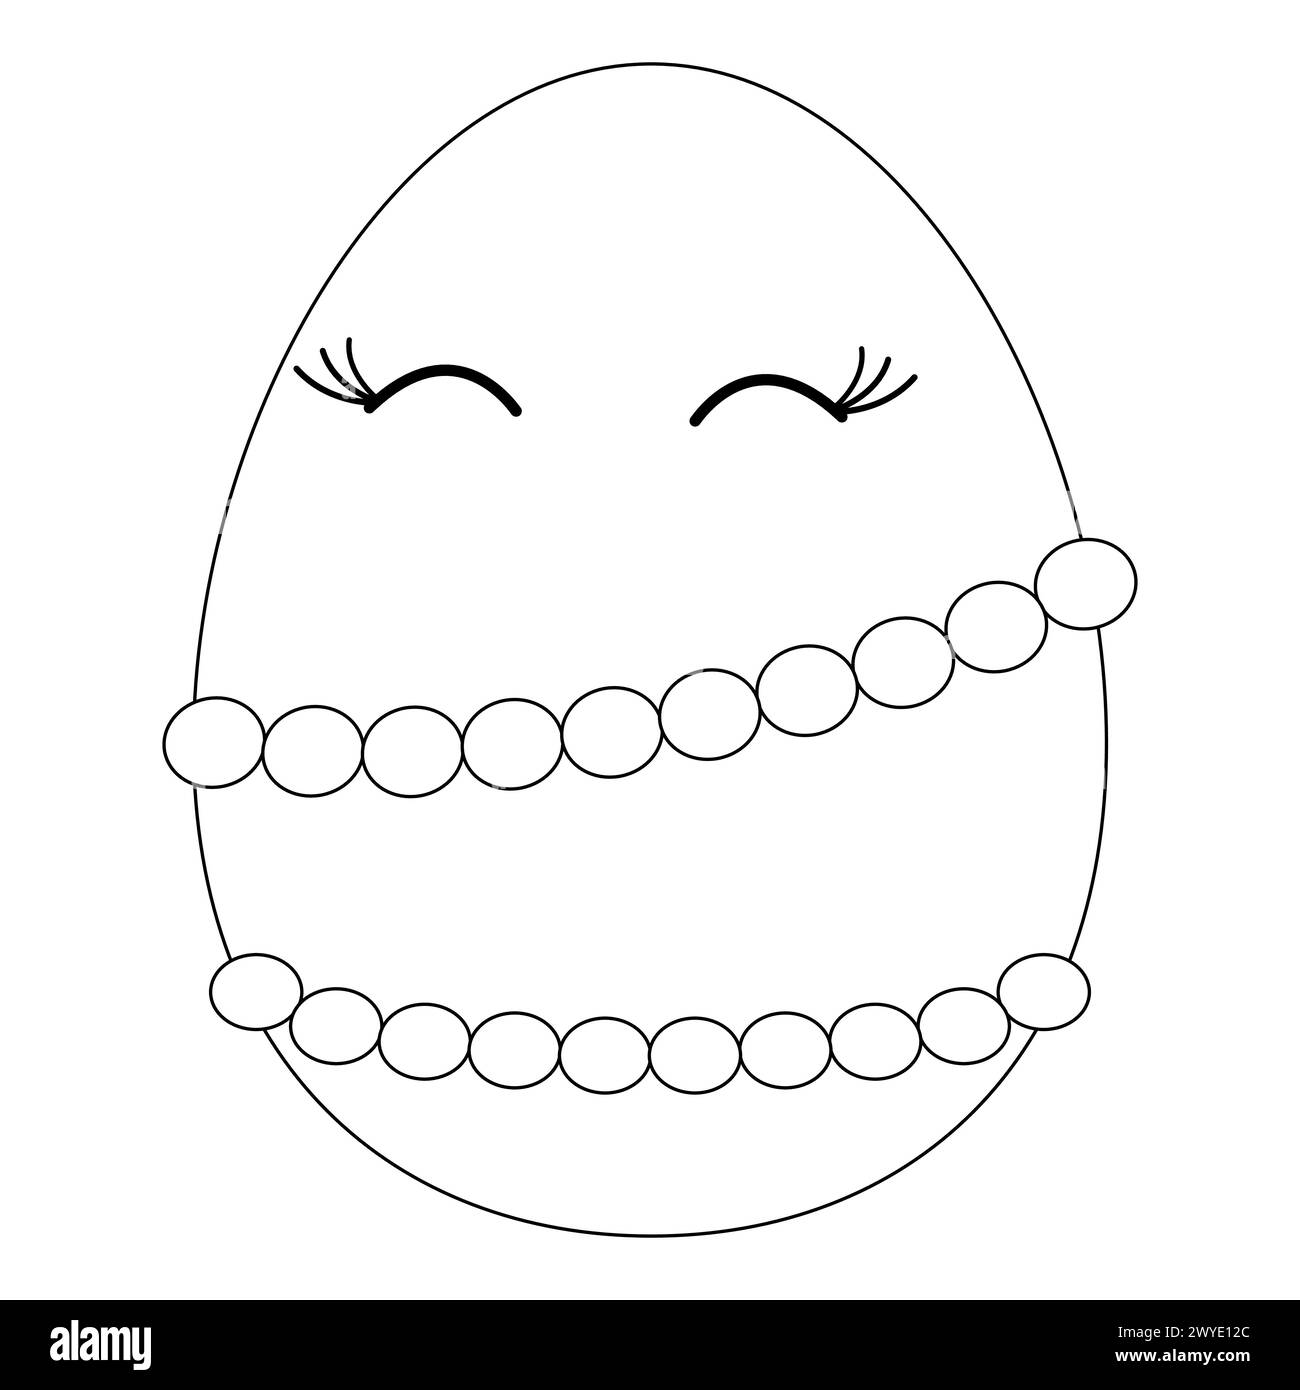 Malbücher für Kinder. Anthropomorphe glückliche Ostereierin in Perlen gekleidet. Vektor-Schwarzweiß-Zeichnung Stock Vektor